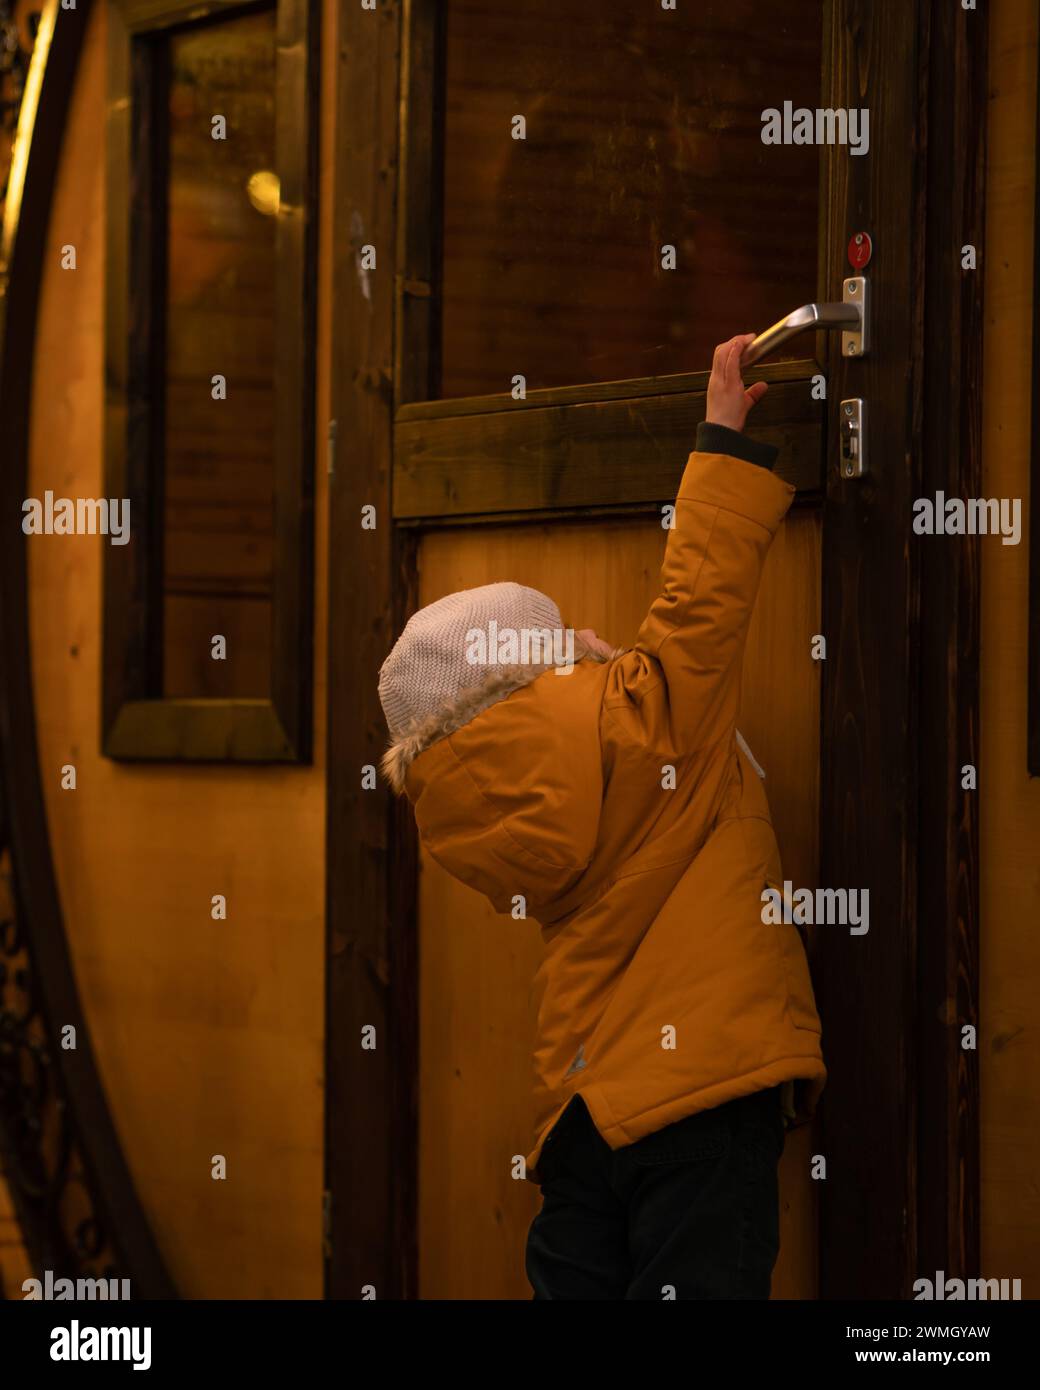 „Der Schlüssel zur Entdeckung“: Ein Kind in einer gelben Jacke und einer weißen Kappe öffnet eine Tür. Das warme Licht betont Neugier und Staunen. Eine Geschichte der Erkundung Stockfoto